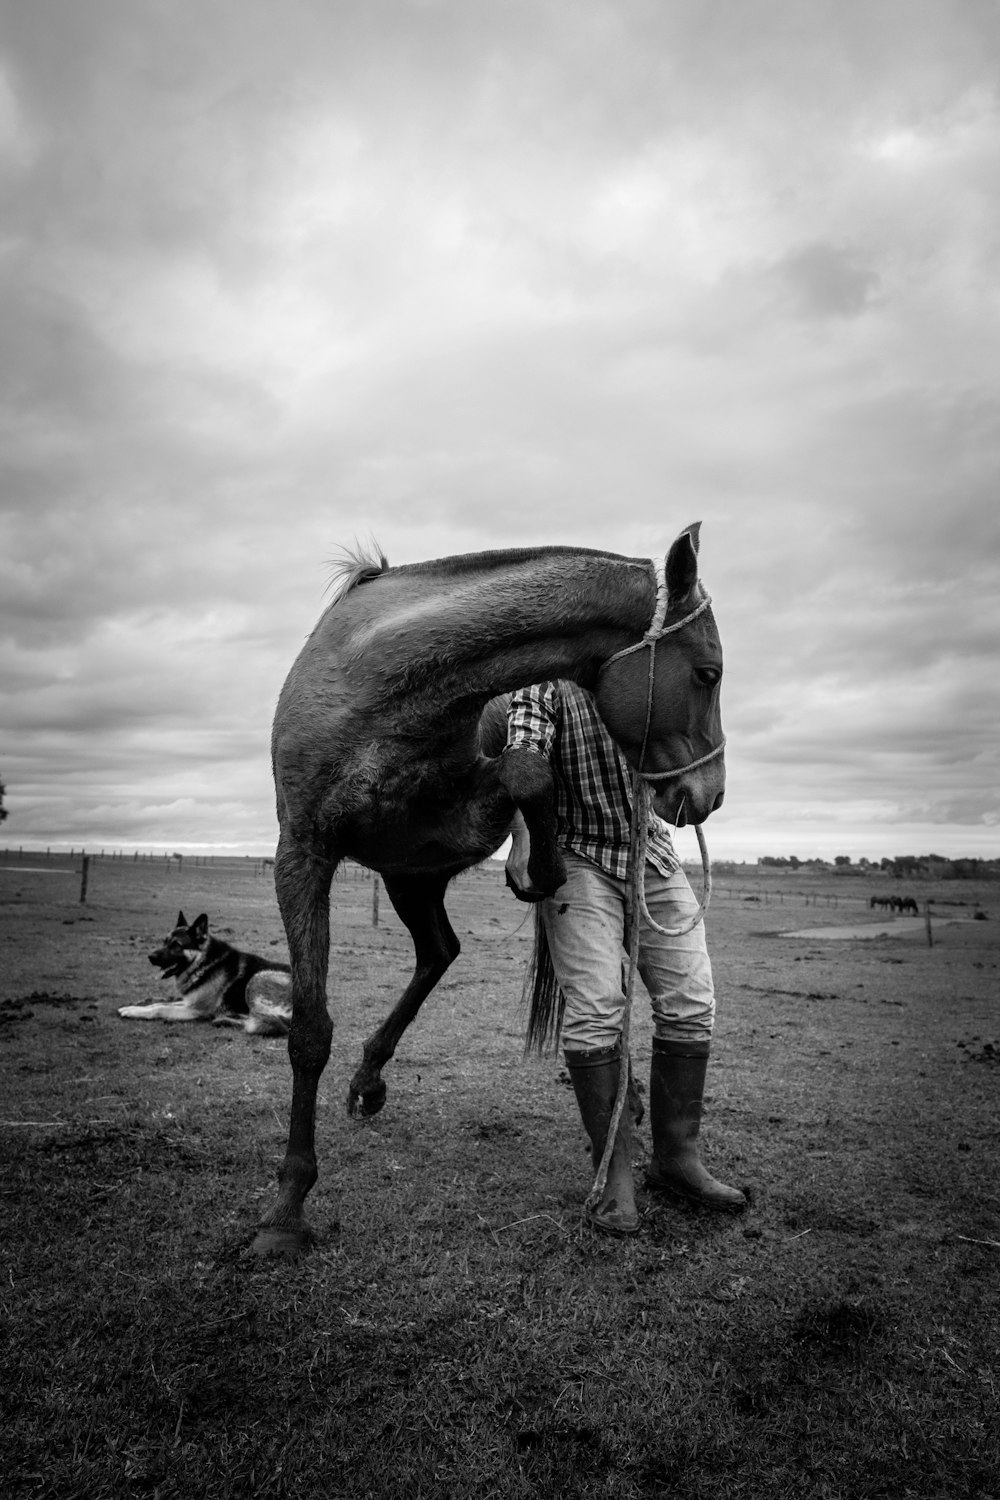 fotografia in scala di grigi del cavallo